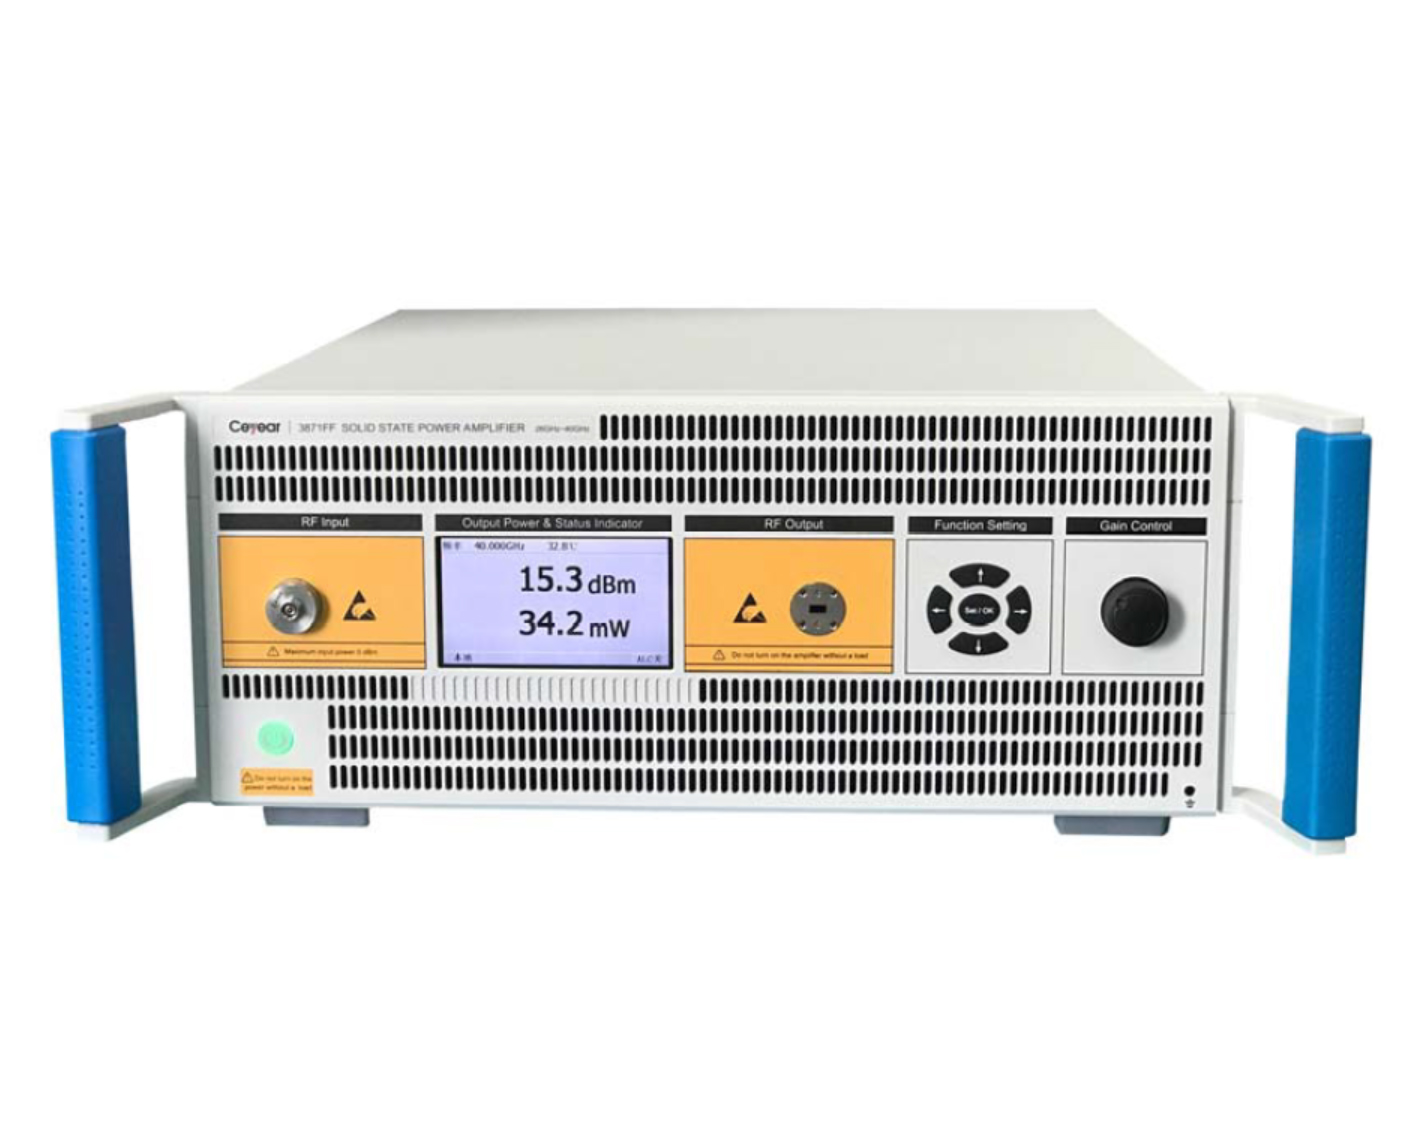 Твердотельные усилители мощностиCeyear серии 387XXс диапазоном частот от 9 кГц до 110 ГГц